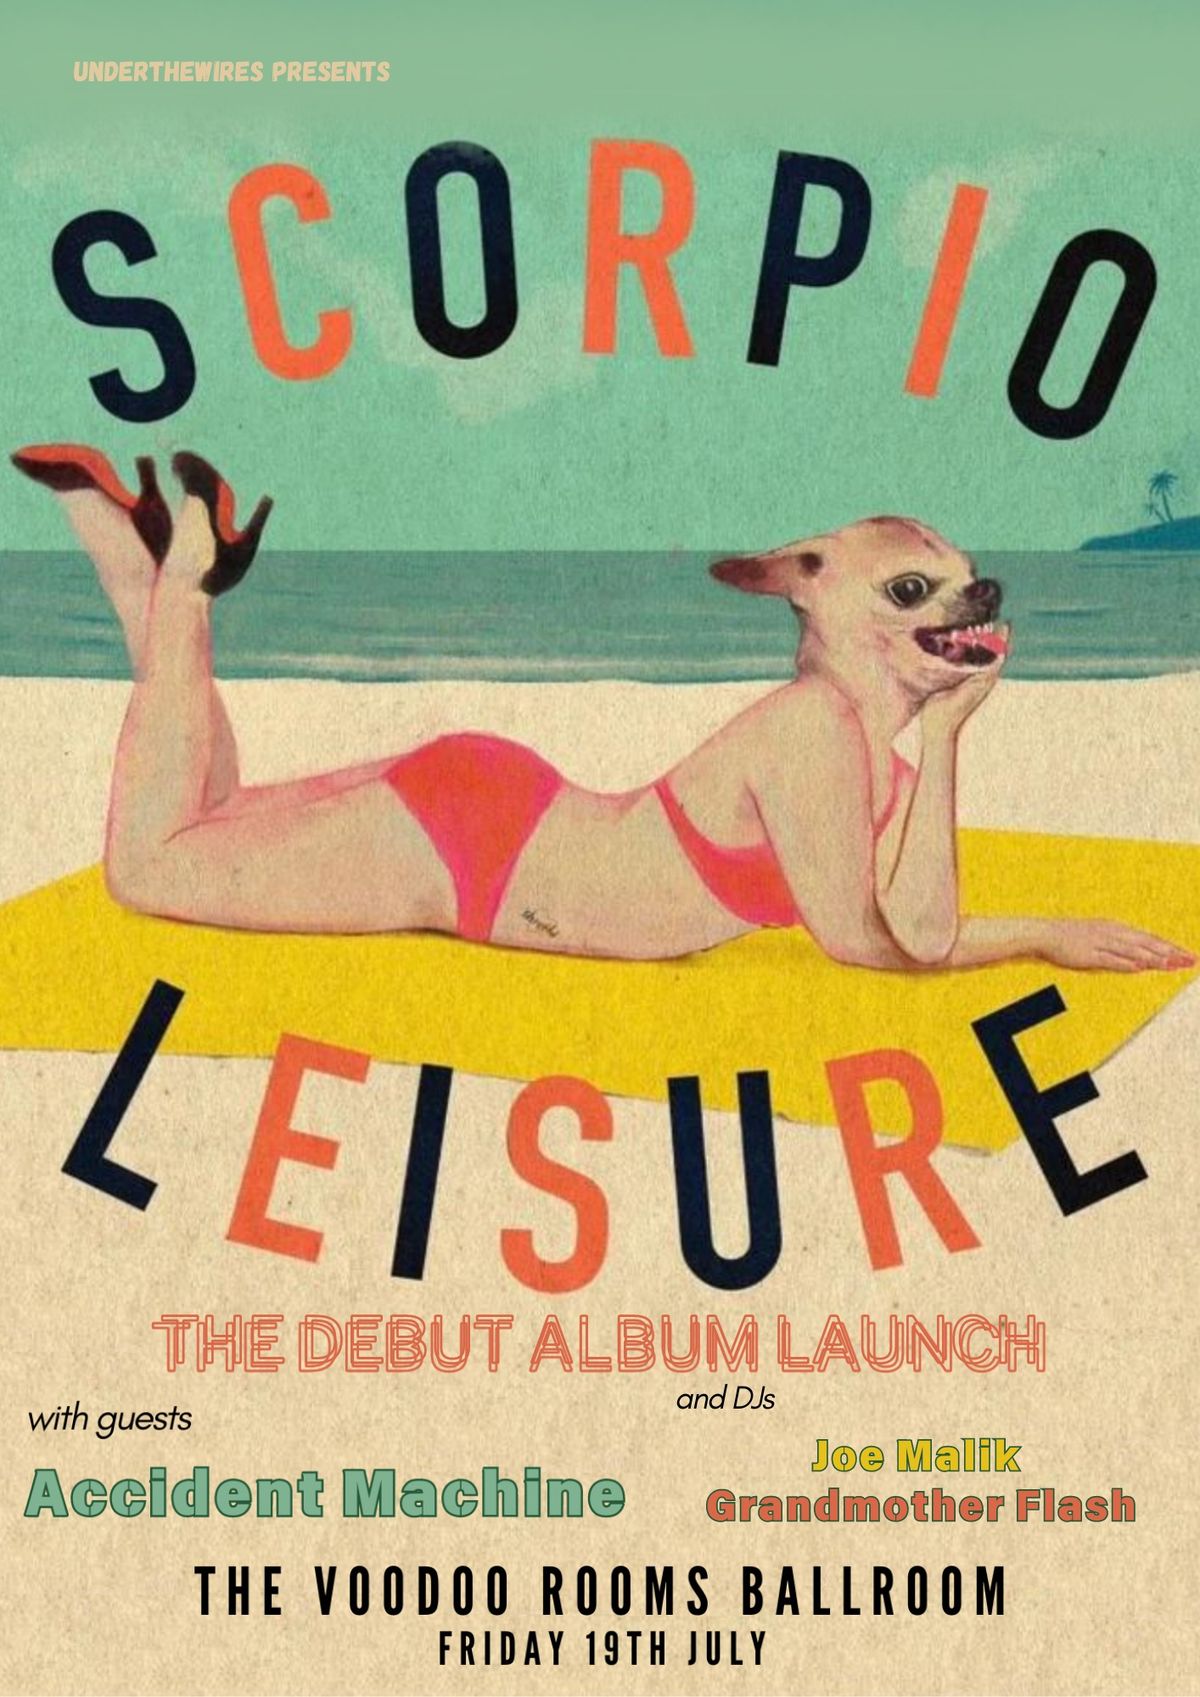 Scorpio Leisure - Album Launch